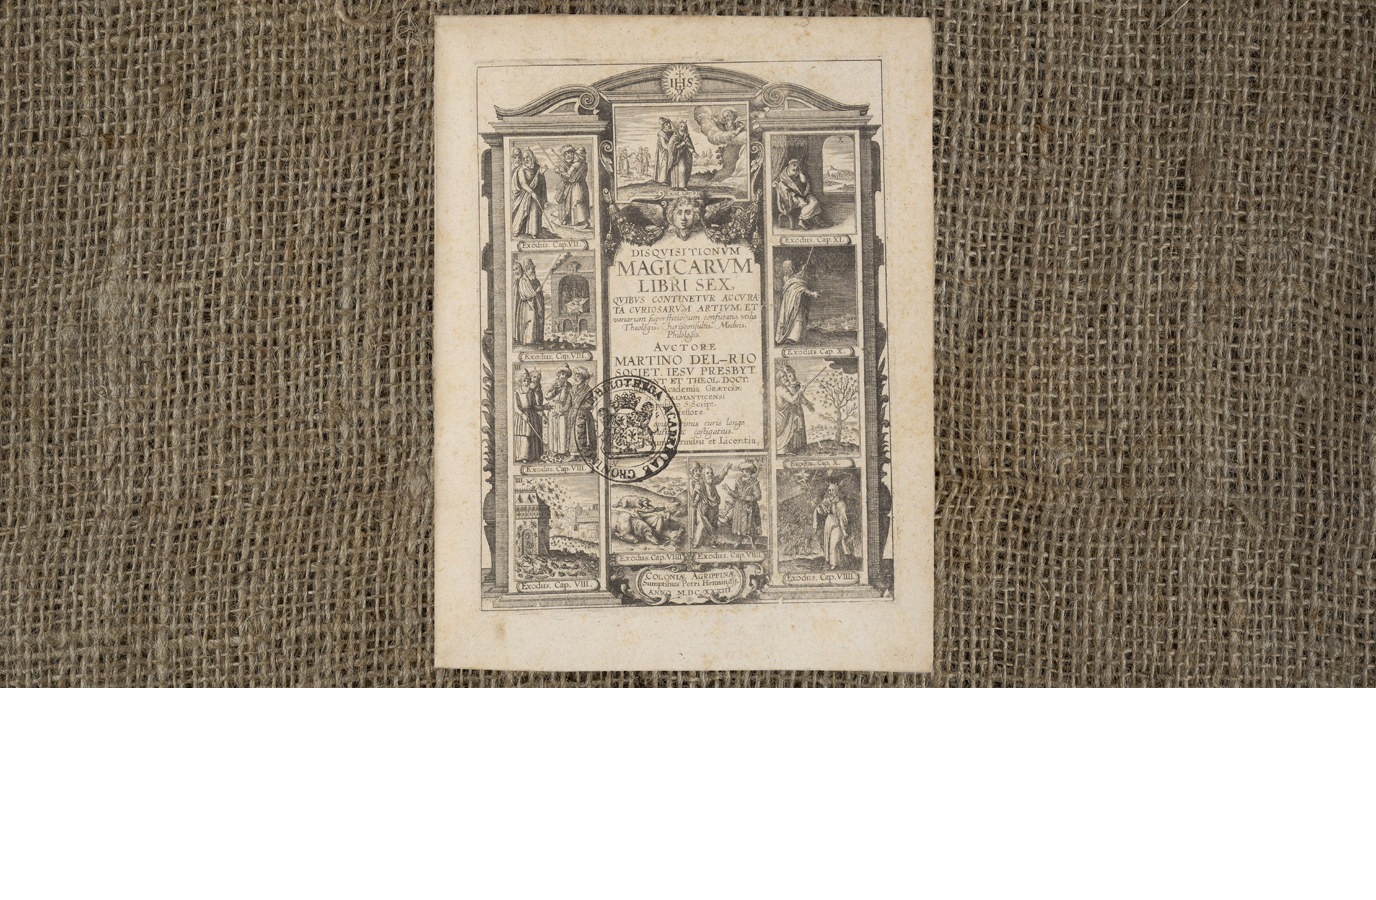 In 1599 kwam Martin Del Rio’s 'Disquisitiones Magicae' voor het eerst uit. Nauta was in het bezit van een exemplaar gedrukt in 1633. Het is een van de beroemdste werken van zijn soort en wordt gezien als het werk dat de ideeën van de heksenvervolgingen in de Nederlanden introduceerde.In 1599 Martin Del Rio’s 'Disquisitiones Magicae' was first published. Nauta owned a 1633 copy of the work. It is one of the most famous works of its kind. It is now seen as the work that brought the ideas of witch prosecution to the Low Countries.